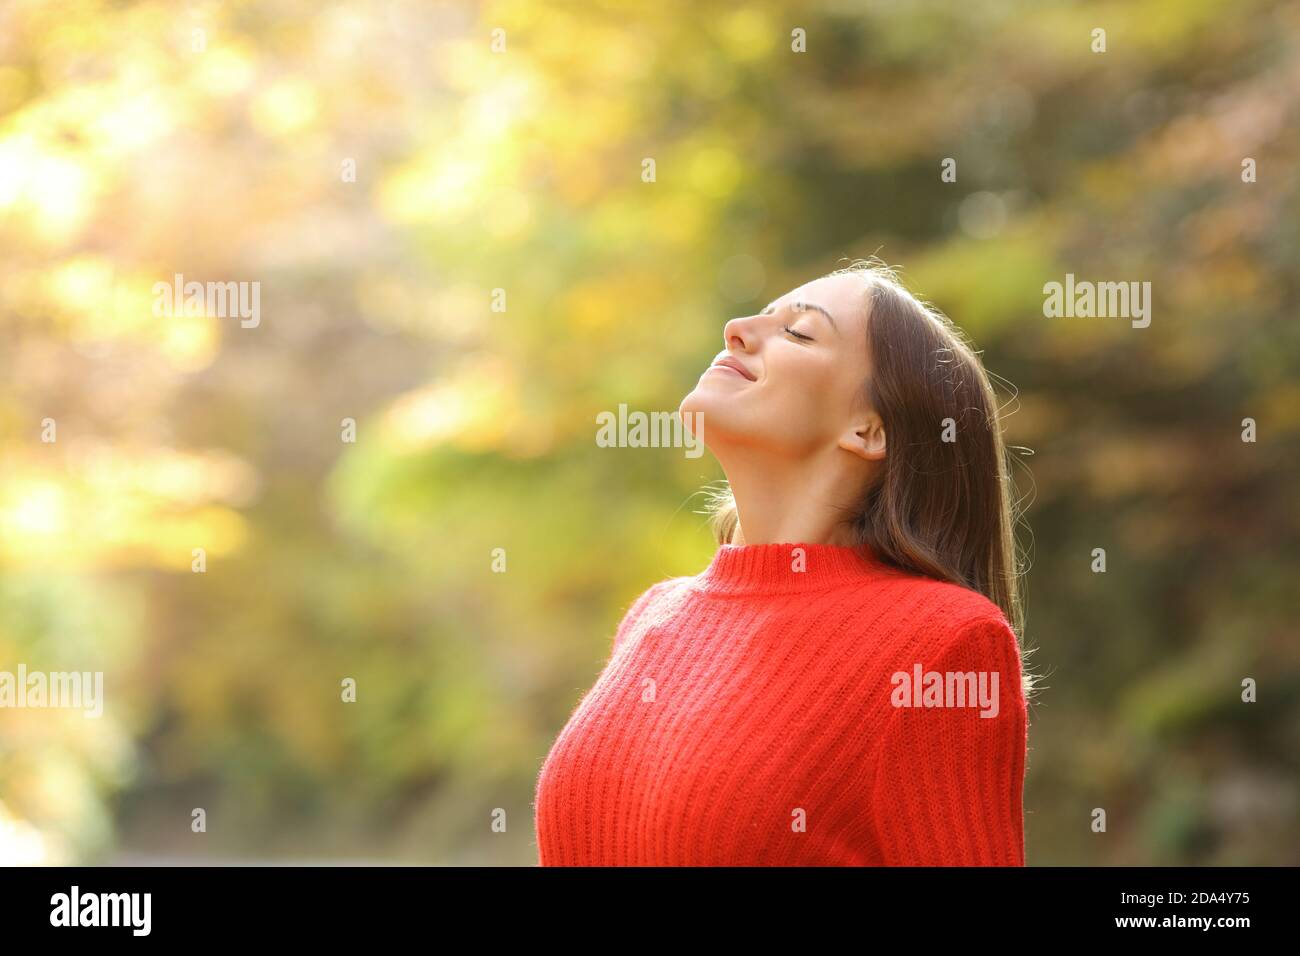 Donna soddisfatta in rosso che respira aria fresca in autunno in una bella foresta o parco Foto Stock